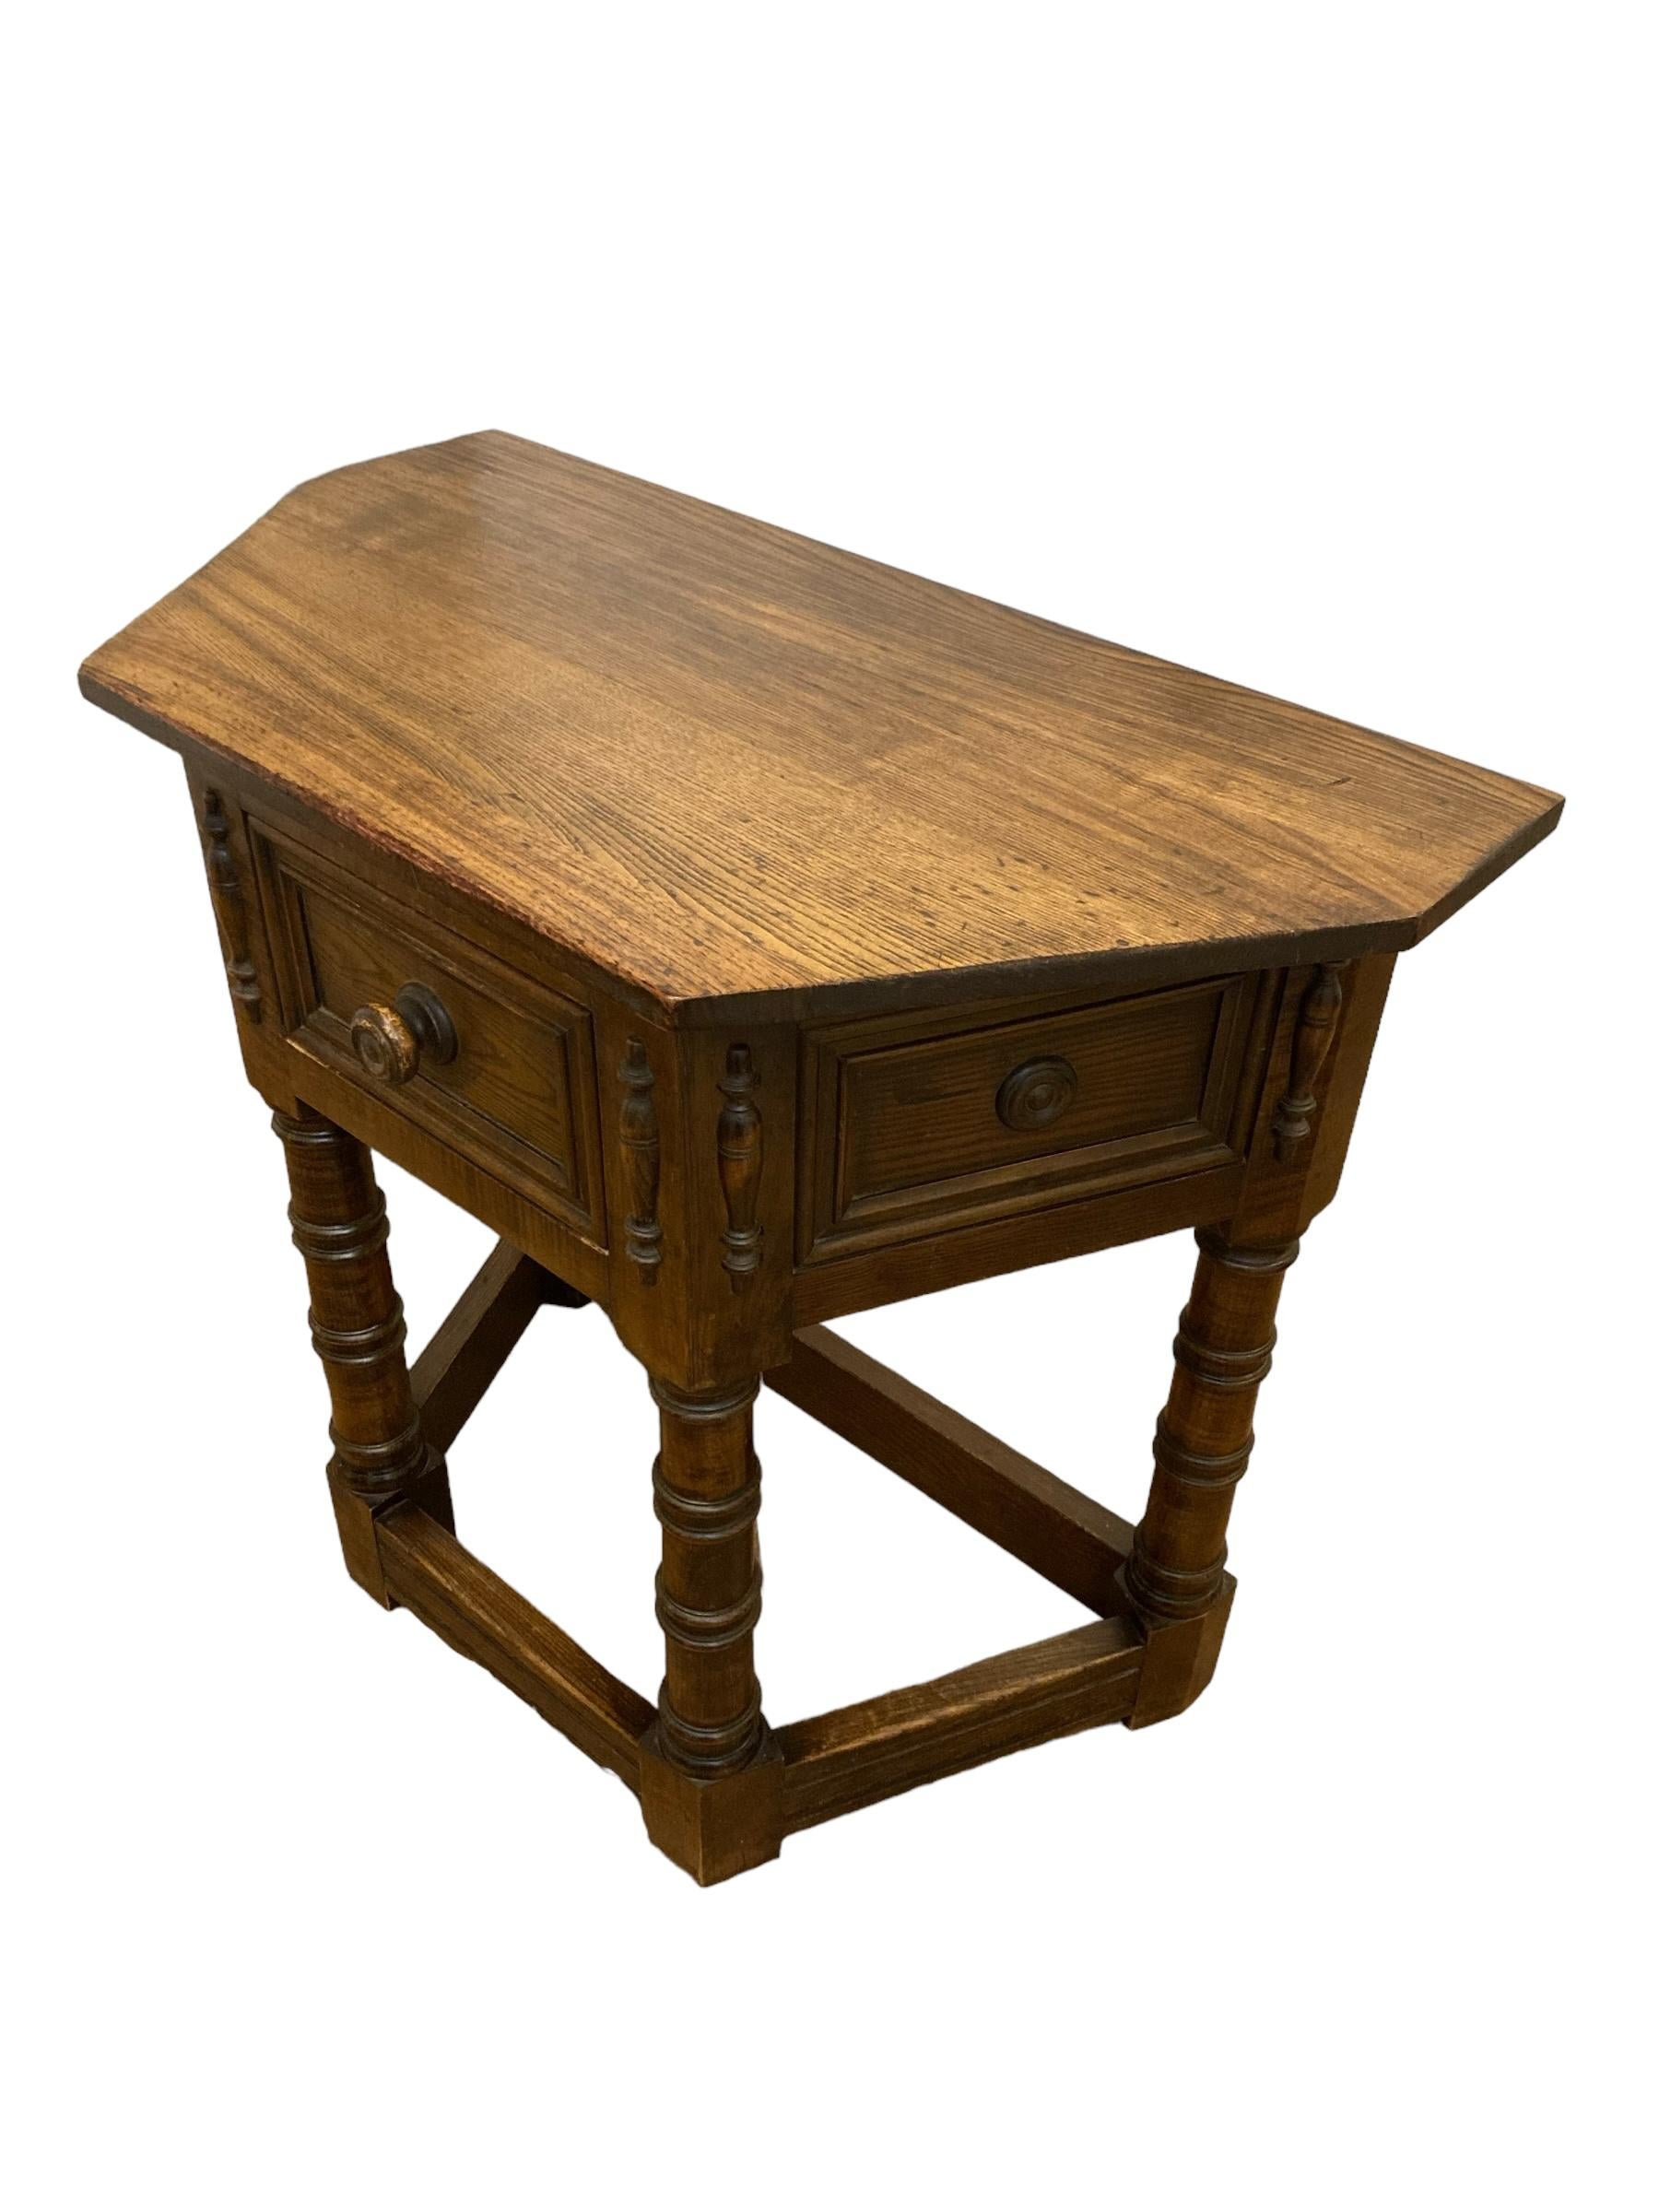 17. Jahrhundert Stil Gothic Look Eiche Credence Side Hall Tisch. Dieses zeitlose Stück strahlt Eleganz und Charme aus. Der Tisch ist aus hochwertigem Eichenholz gefertigt und hat eine satte, warme Oberfläche, die die natürliche Schönheit des Holzes